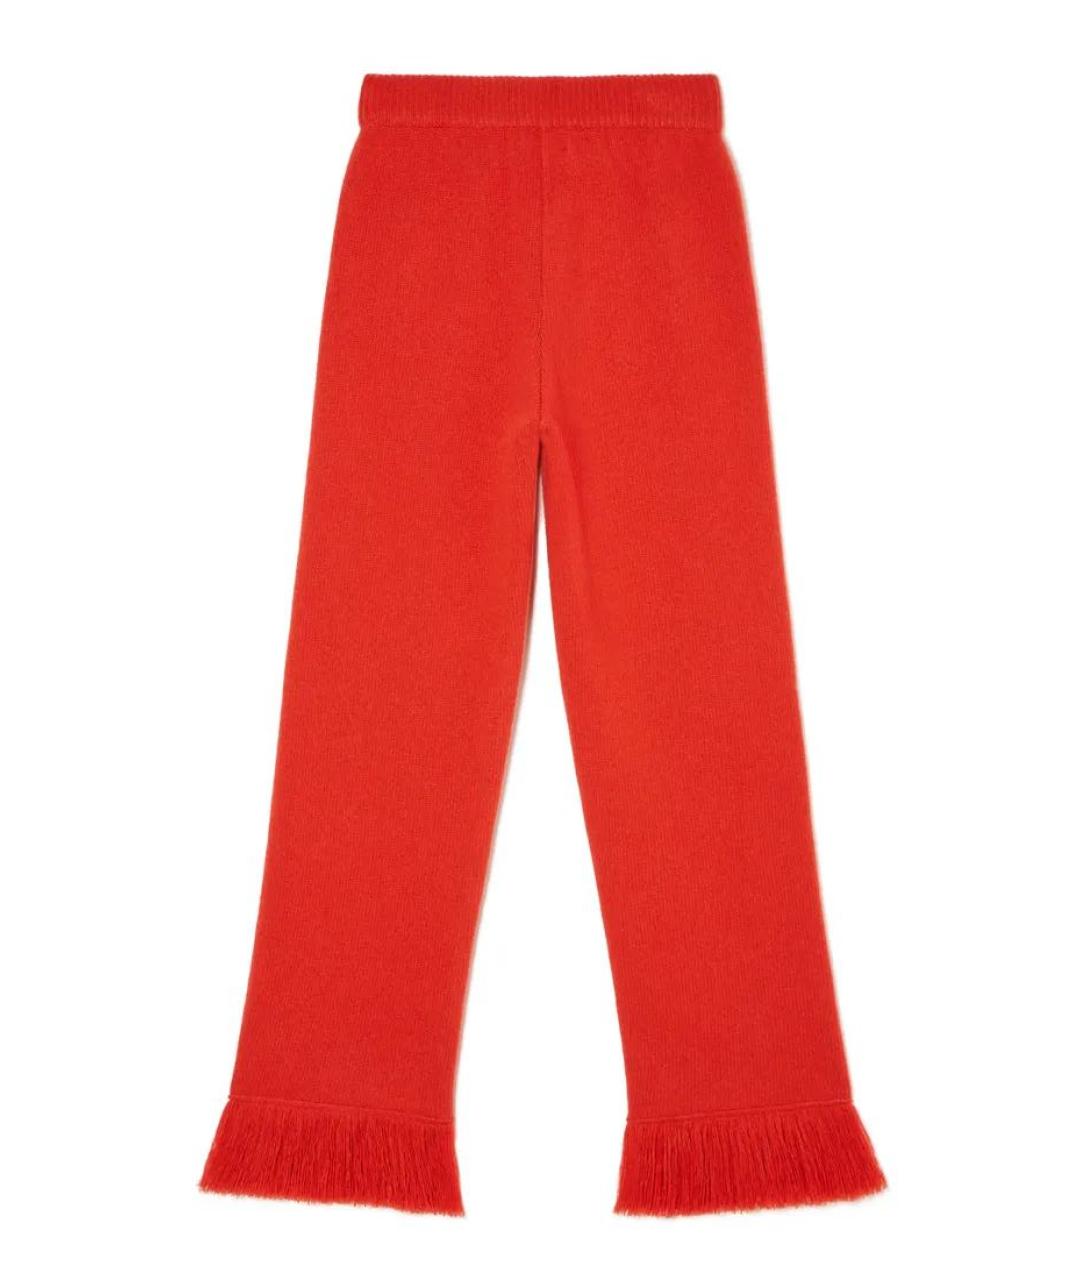 ALANUI Красные шерстяные брюки широкие, фото 2